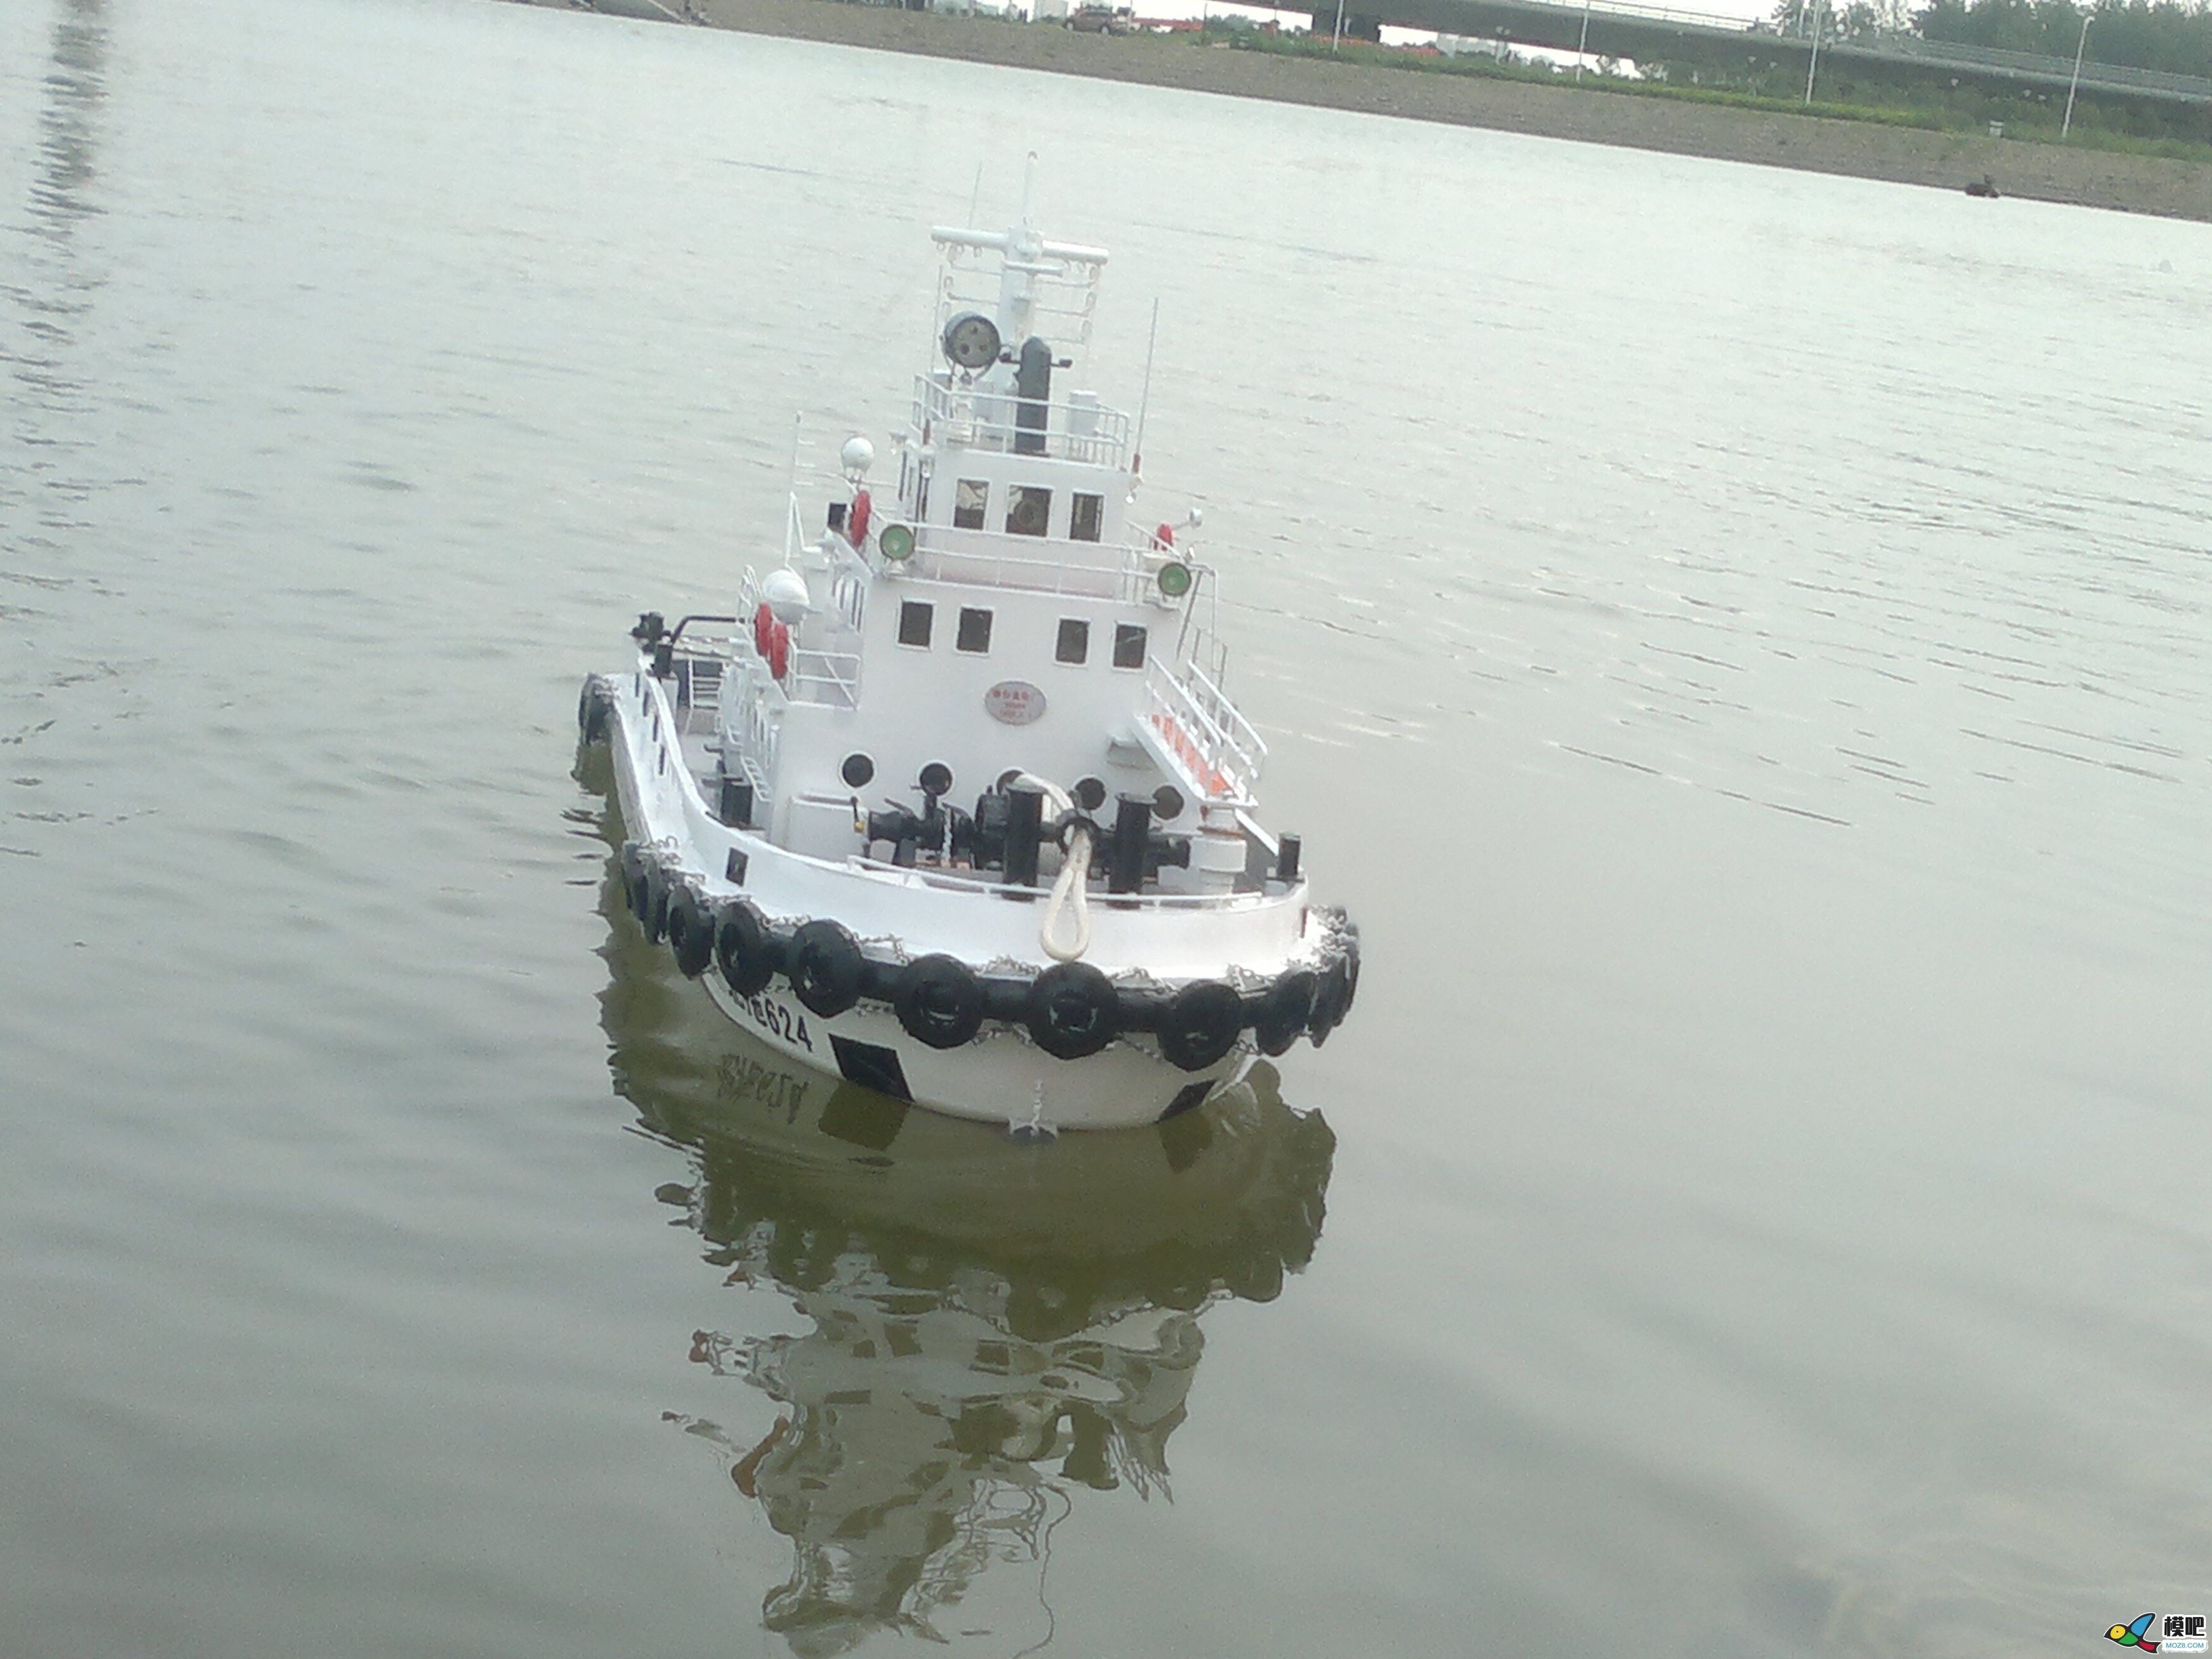 因为怀念所以制作，海军拖船制作小记 海军小型拖船,中国海军拖船,海军布缆船 作者:艇长 1469 